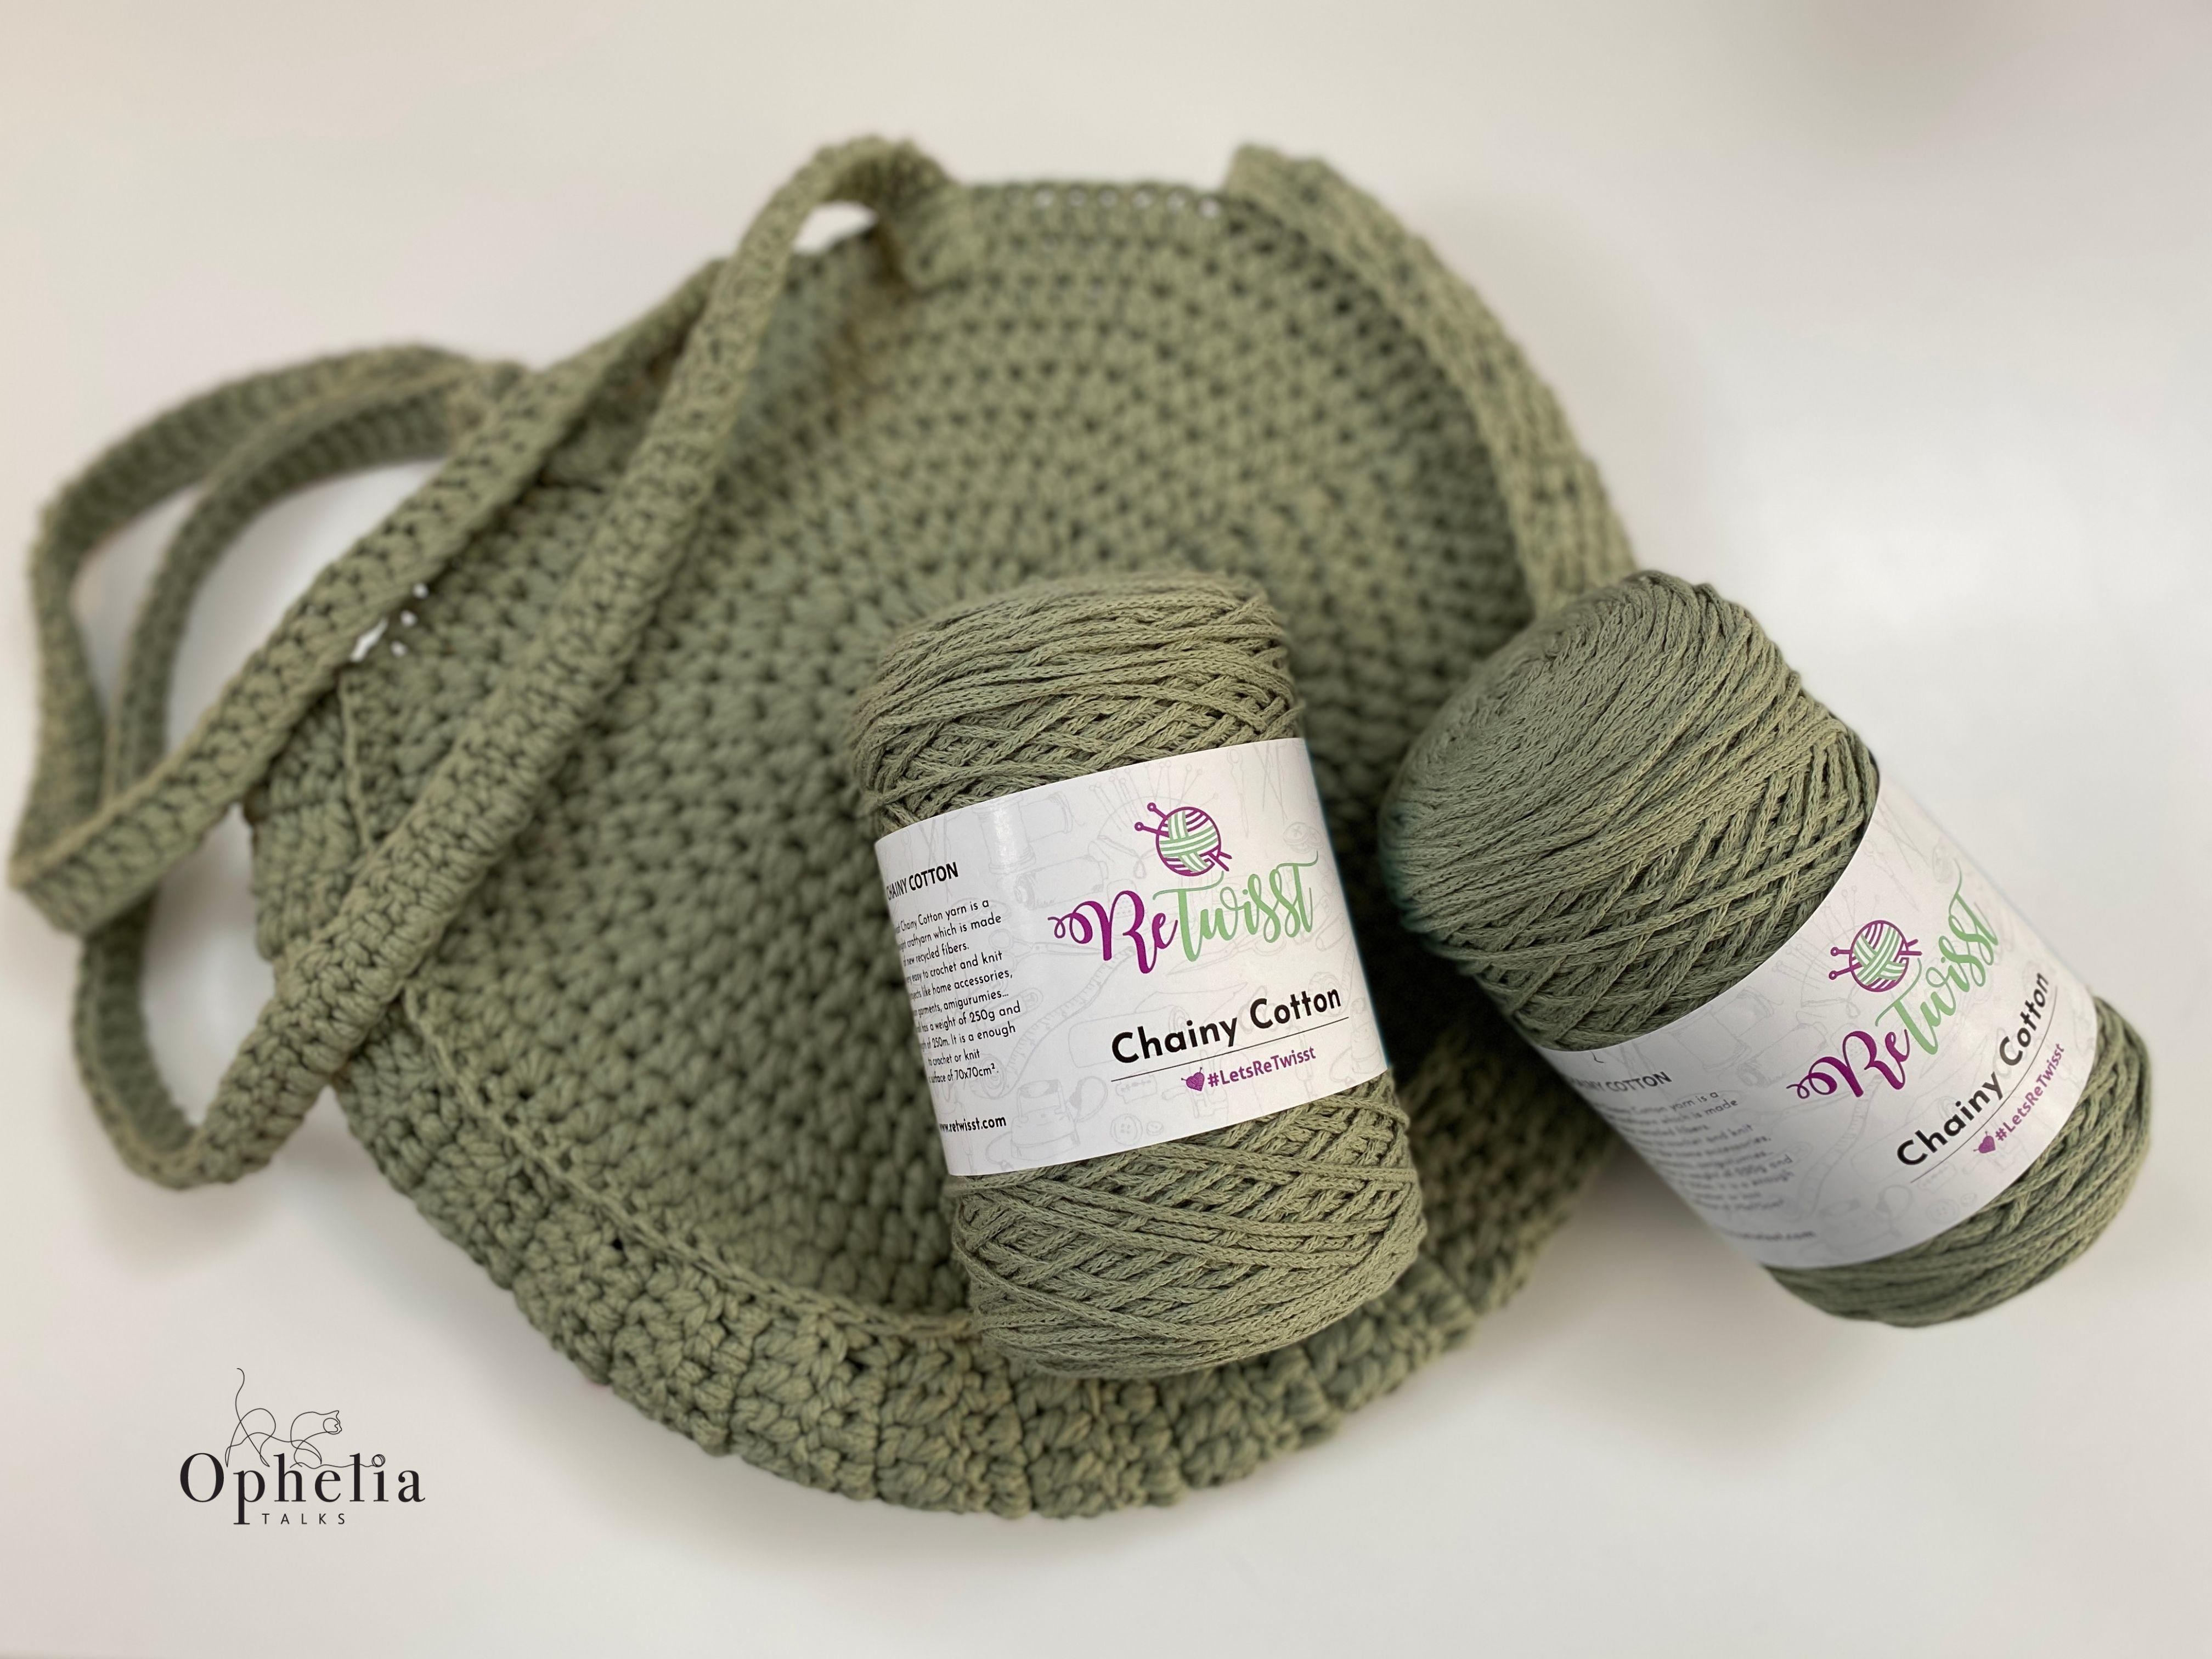 Thea Bag Crochet Yarn Kit - Twice Sheared Sheep